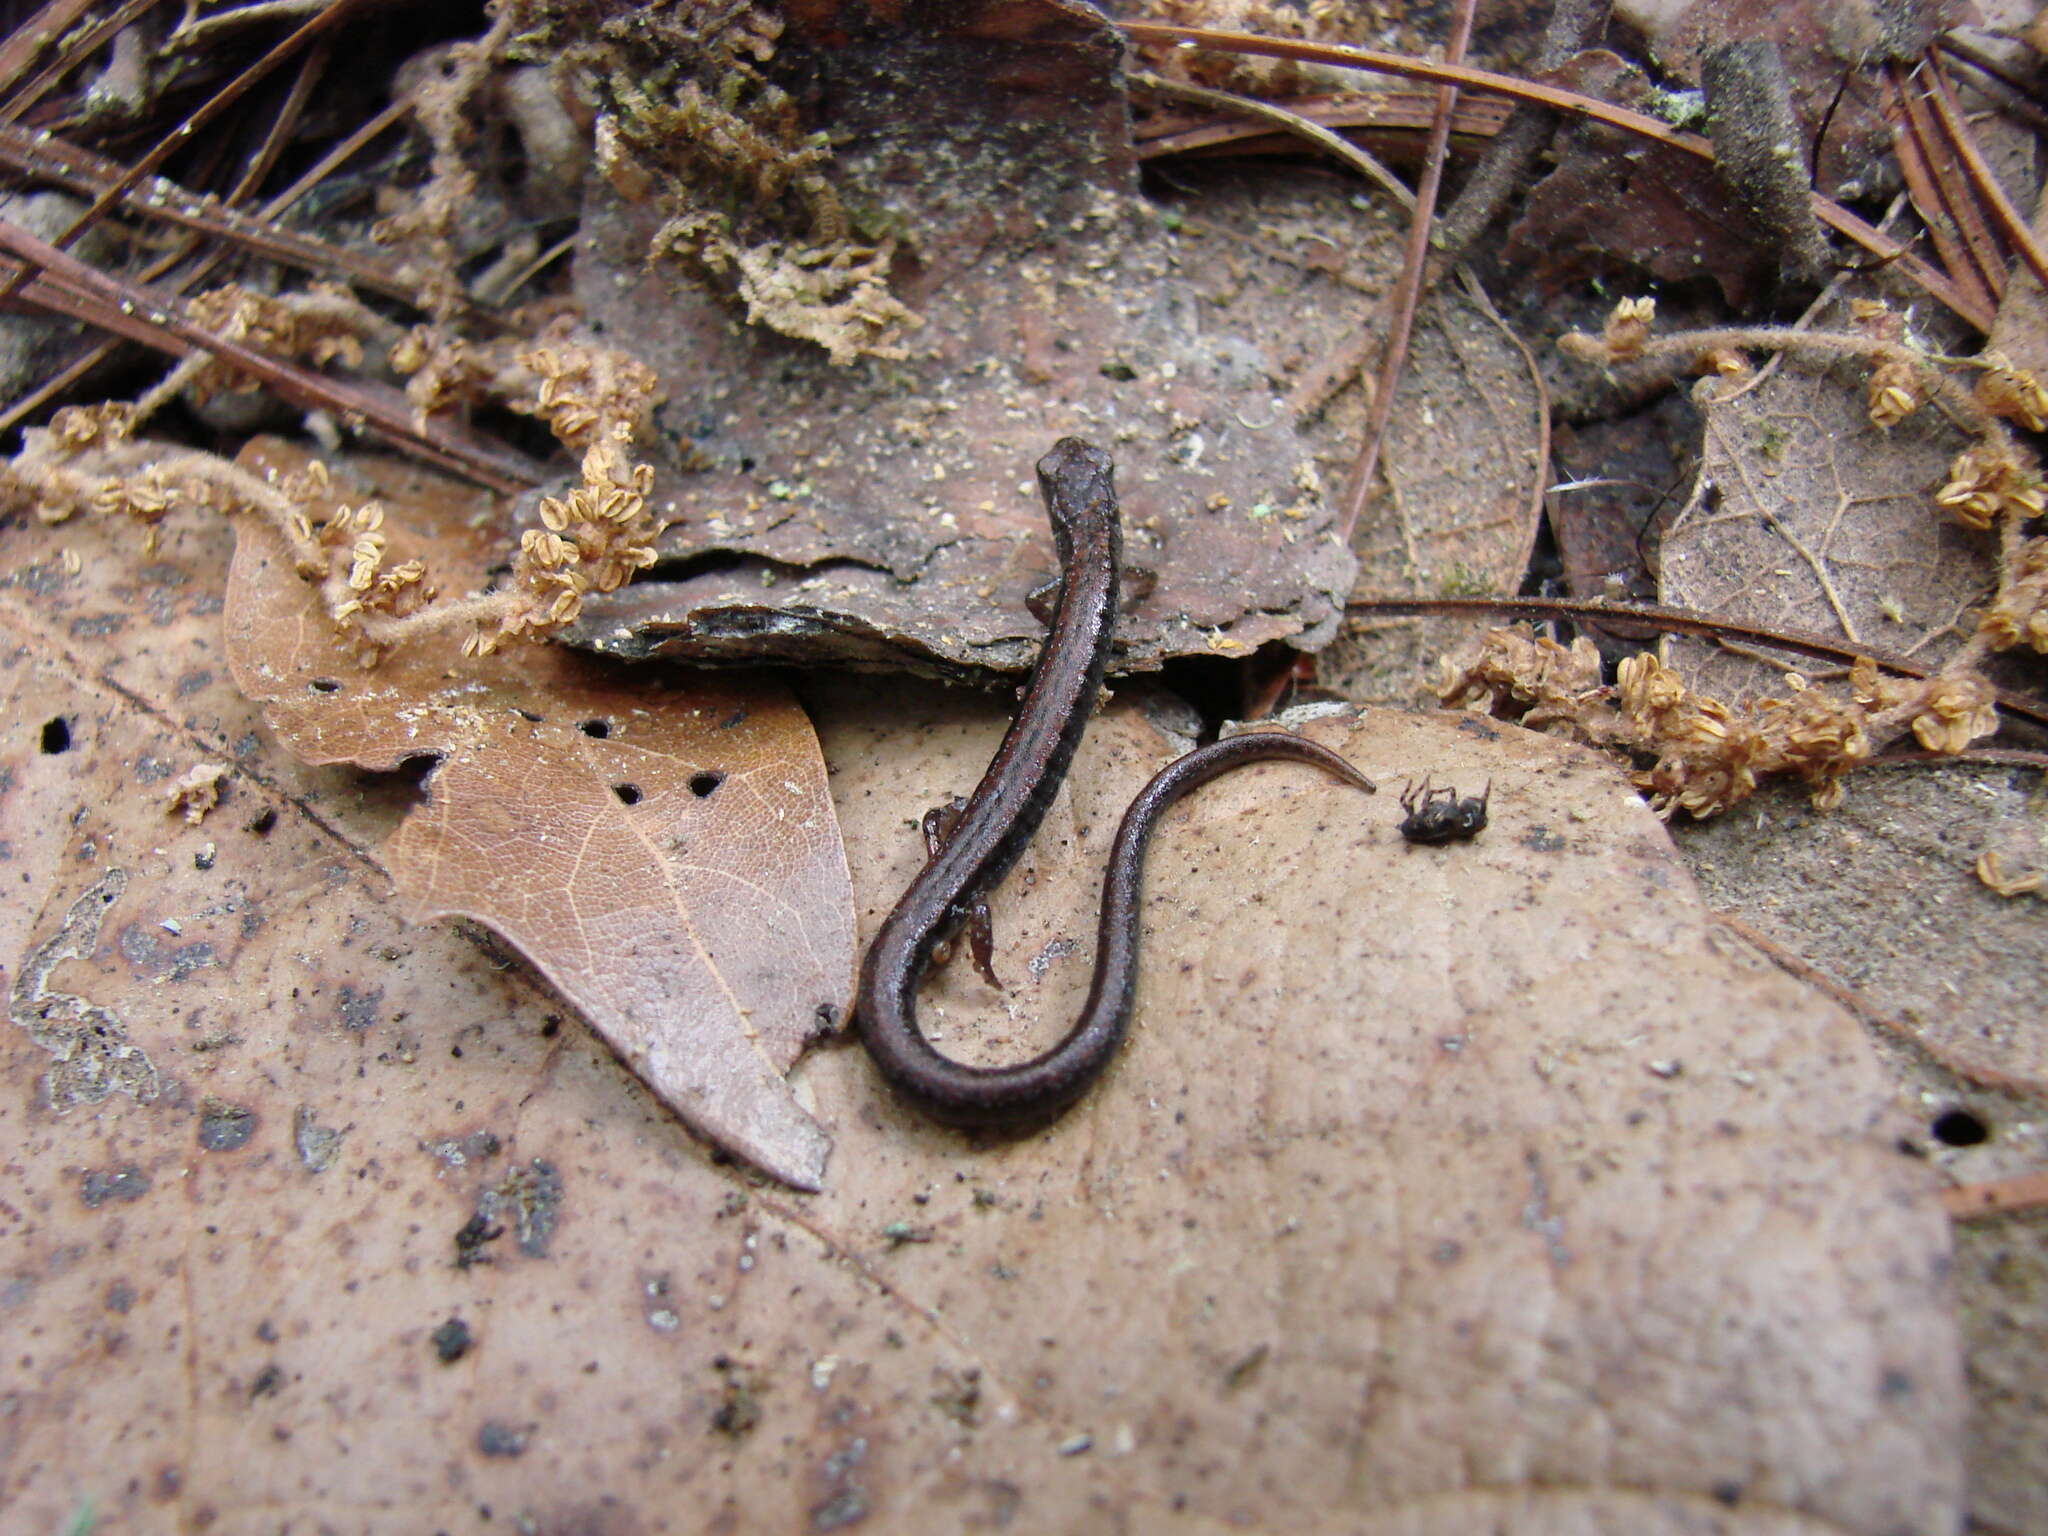 Image of MacDougal's Pygmy Salamander